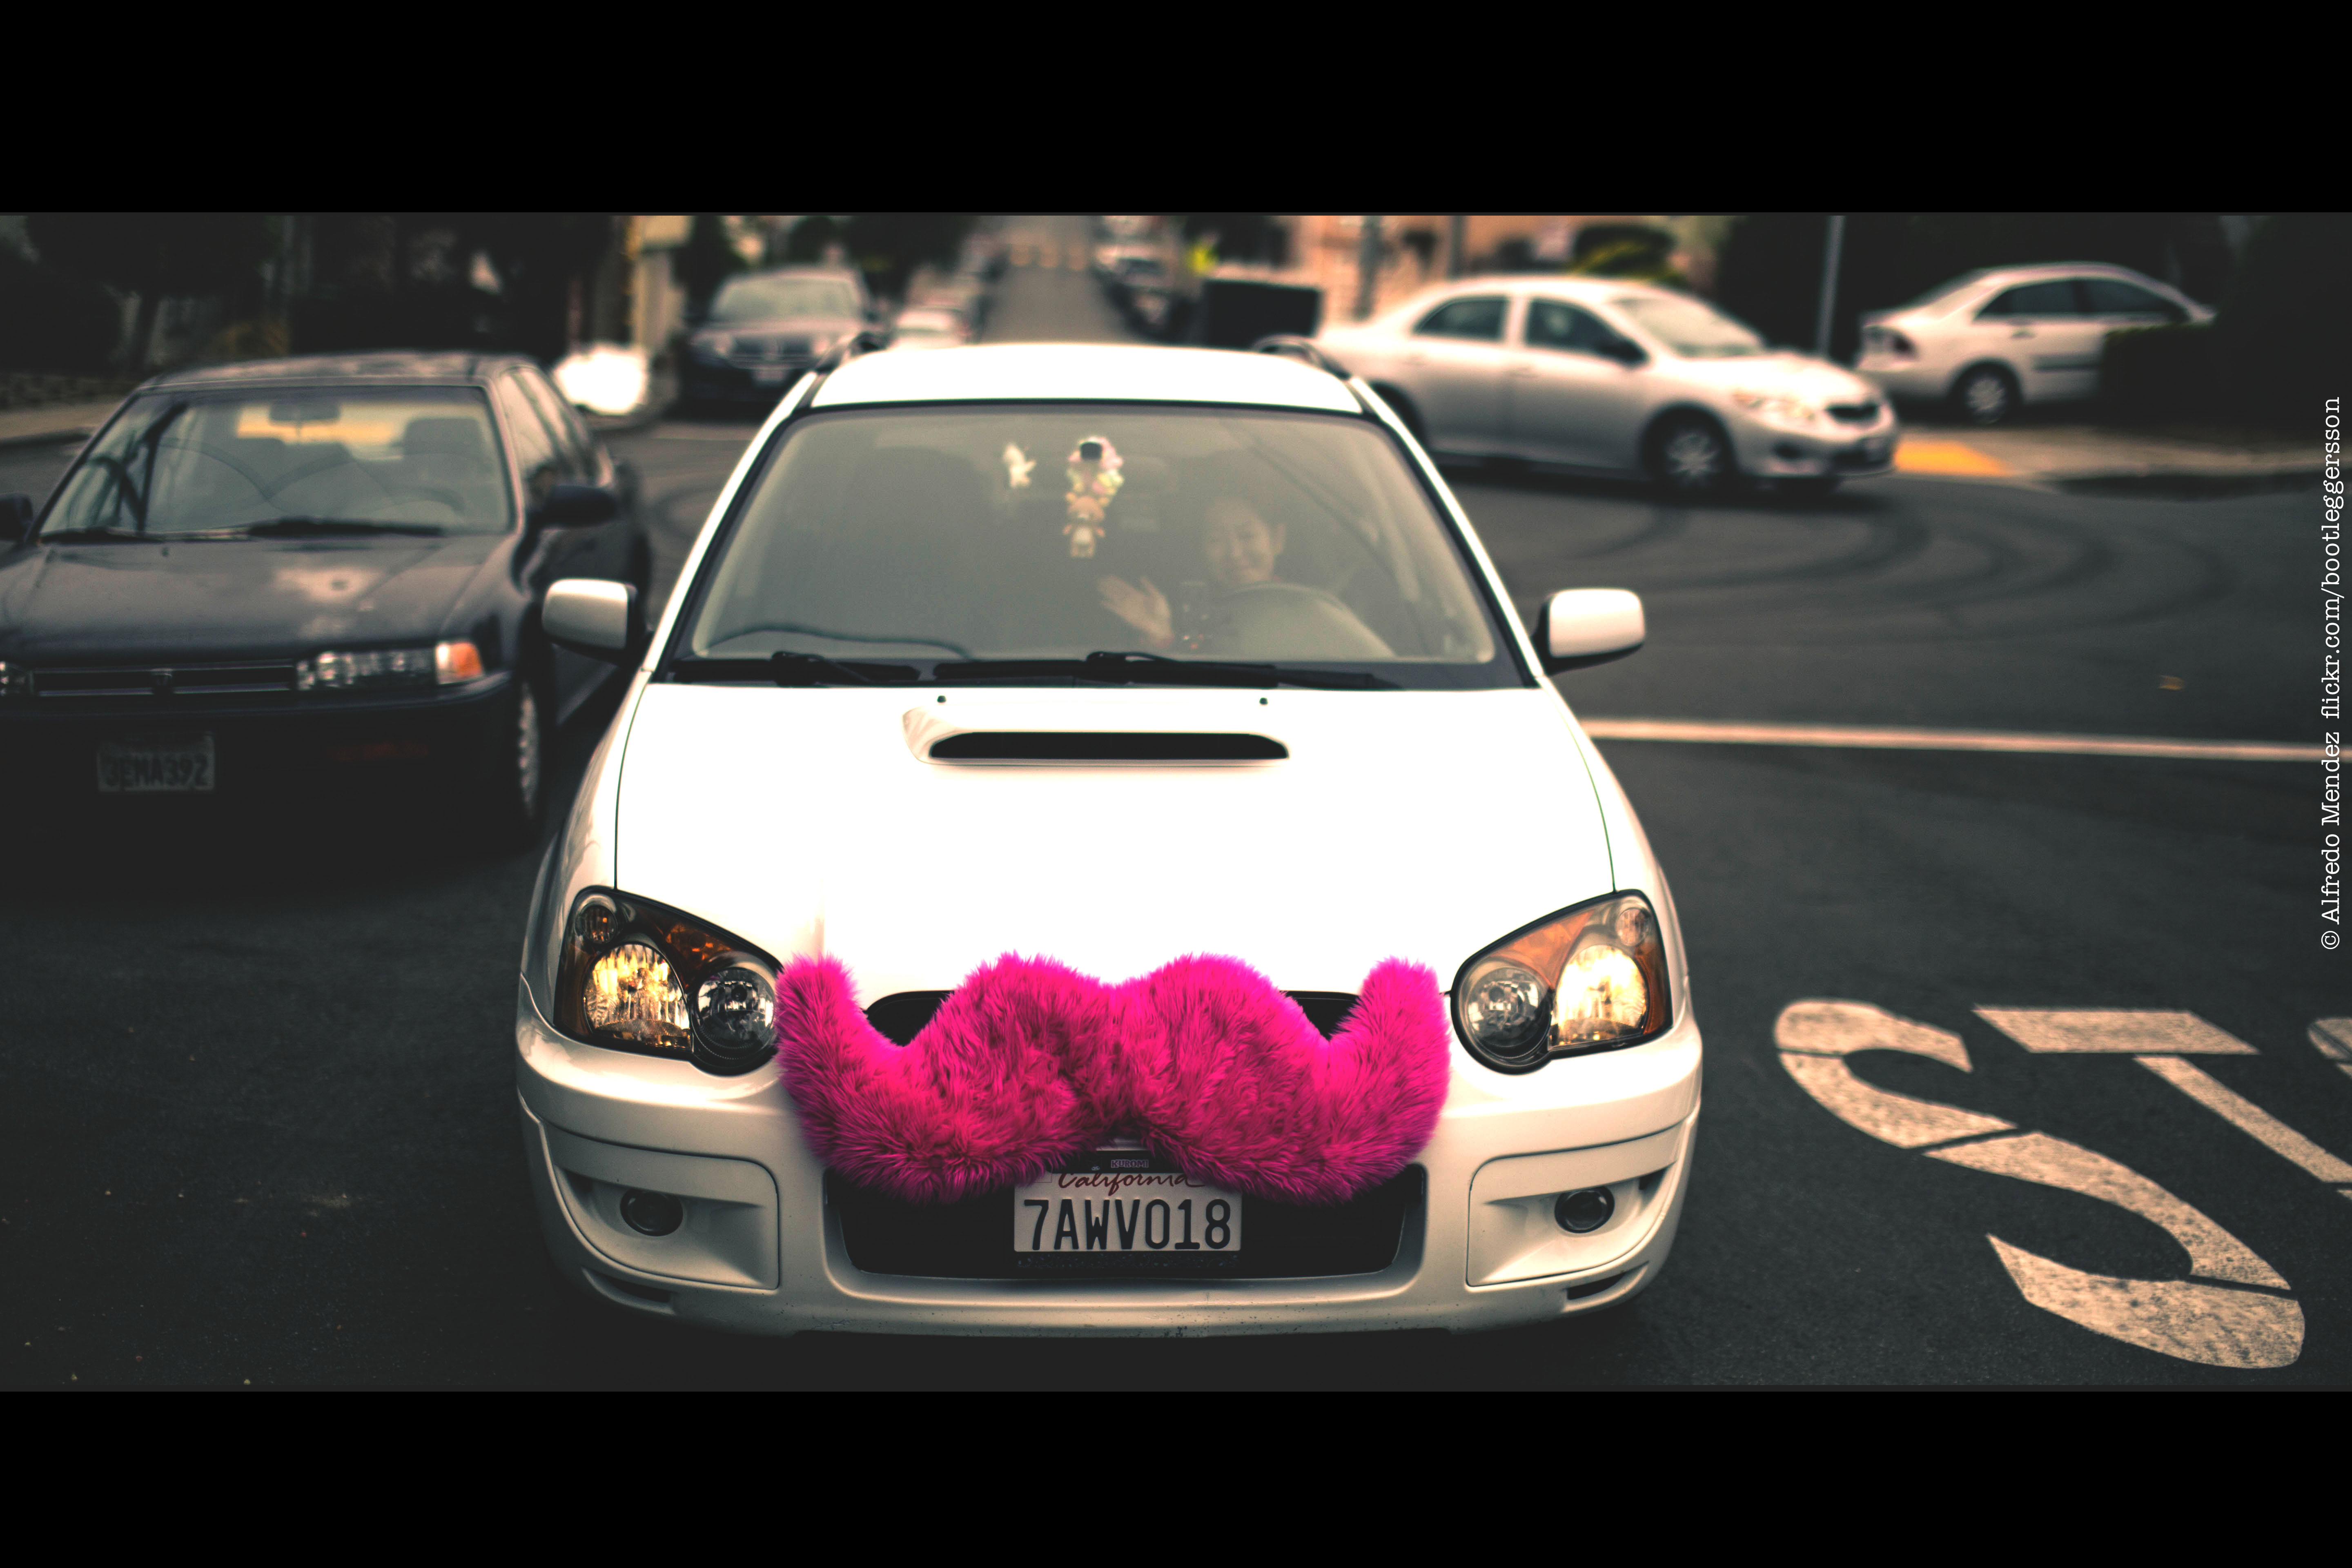 Une photographie montre une voiture avec une grande moustache rose duveteuse fixée à la calandre avant de la voiture.